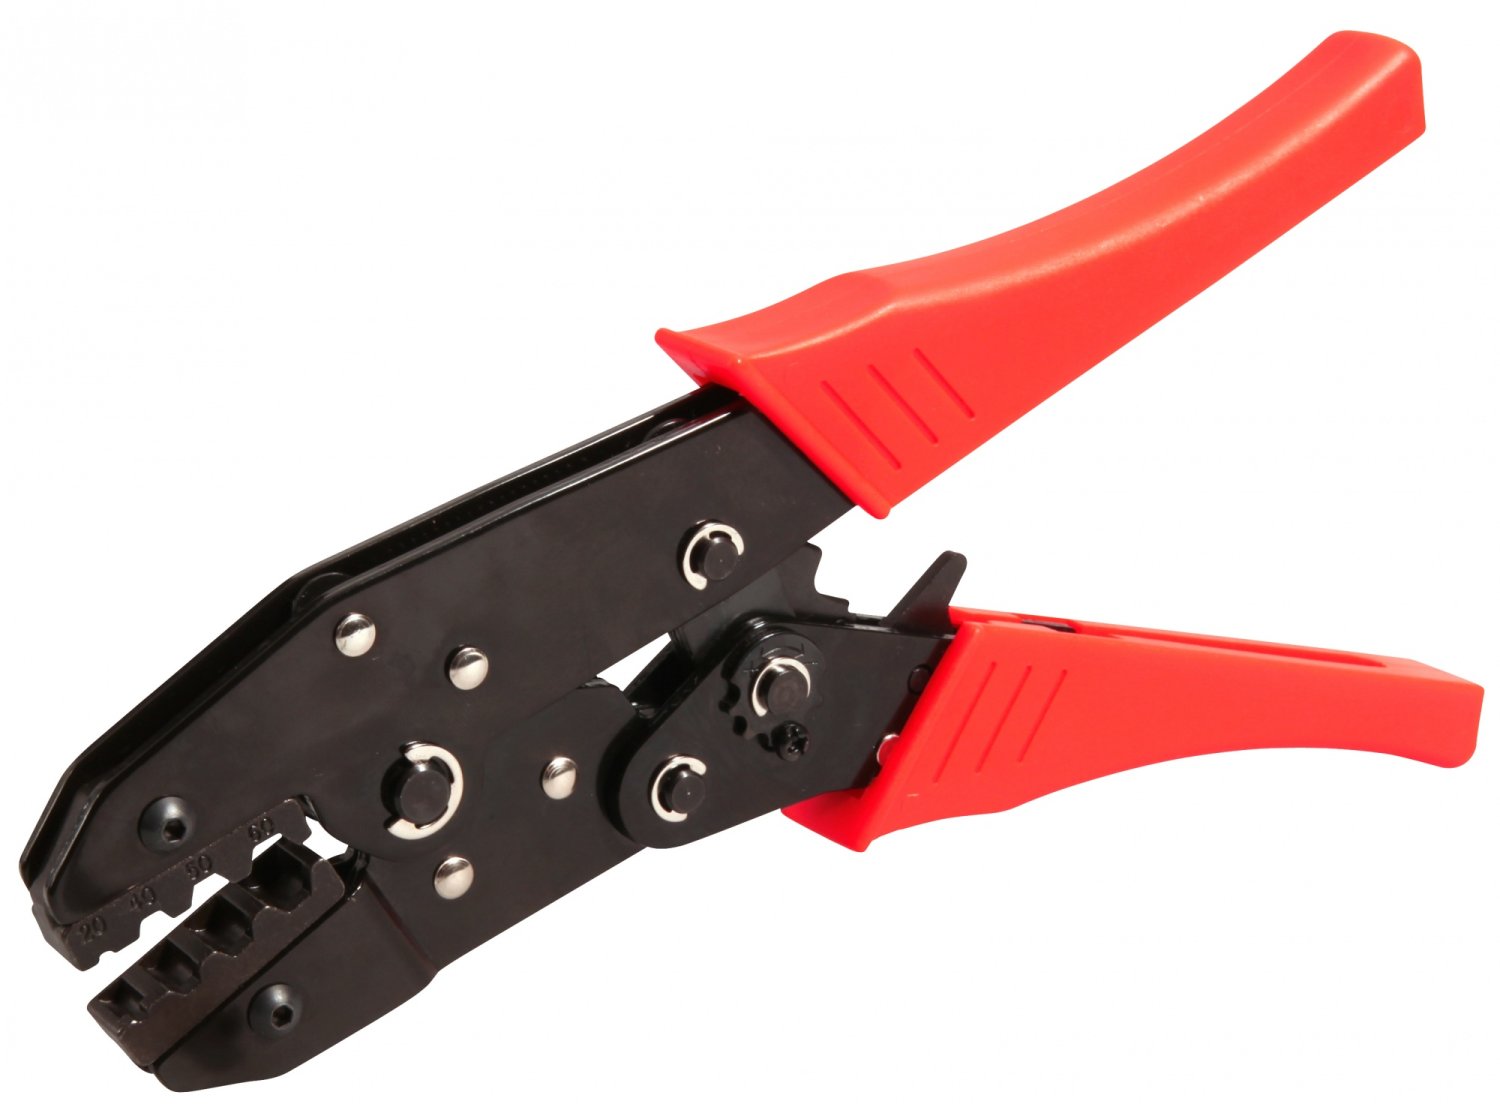 Инструмент многофункциональный ELVEDES для обжимания и троса и рубашки, красный/черный, 2009019 многофункциональный маникюрный инструмент 7 5 см zwilling inox